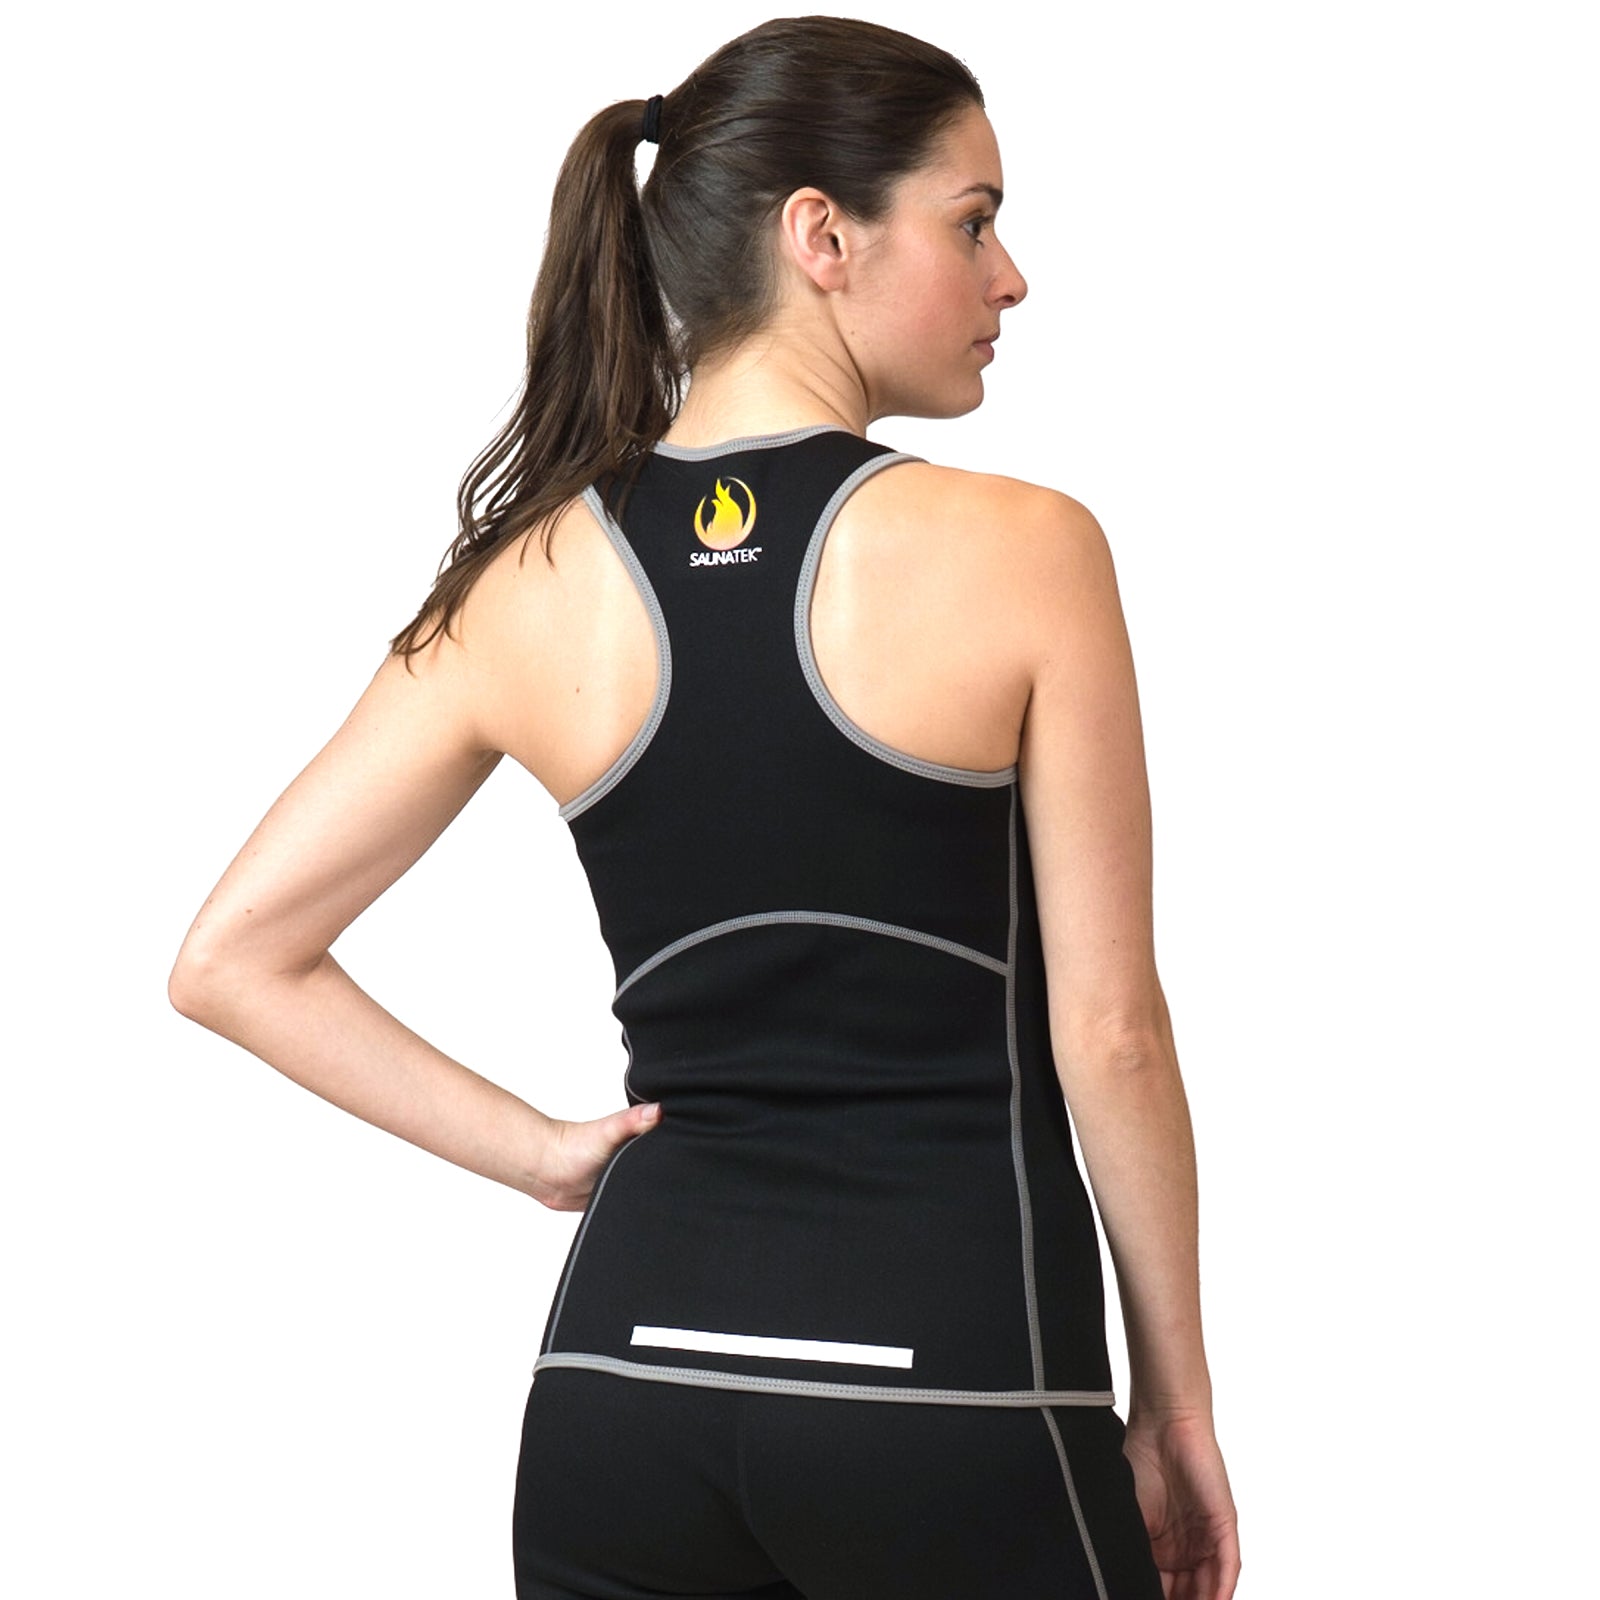 SaunaFX Vest Medium Black Neoprene Sauna Exercise Full Zip Suit Top Womens